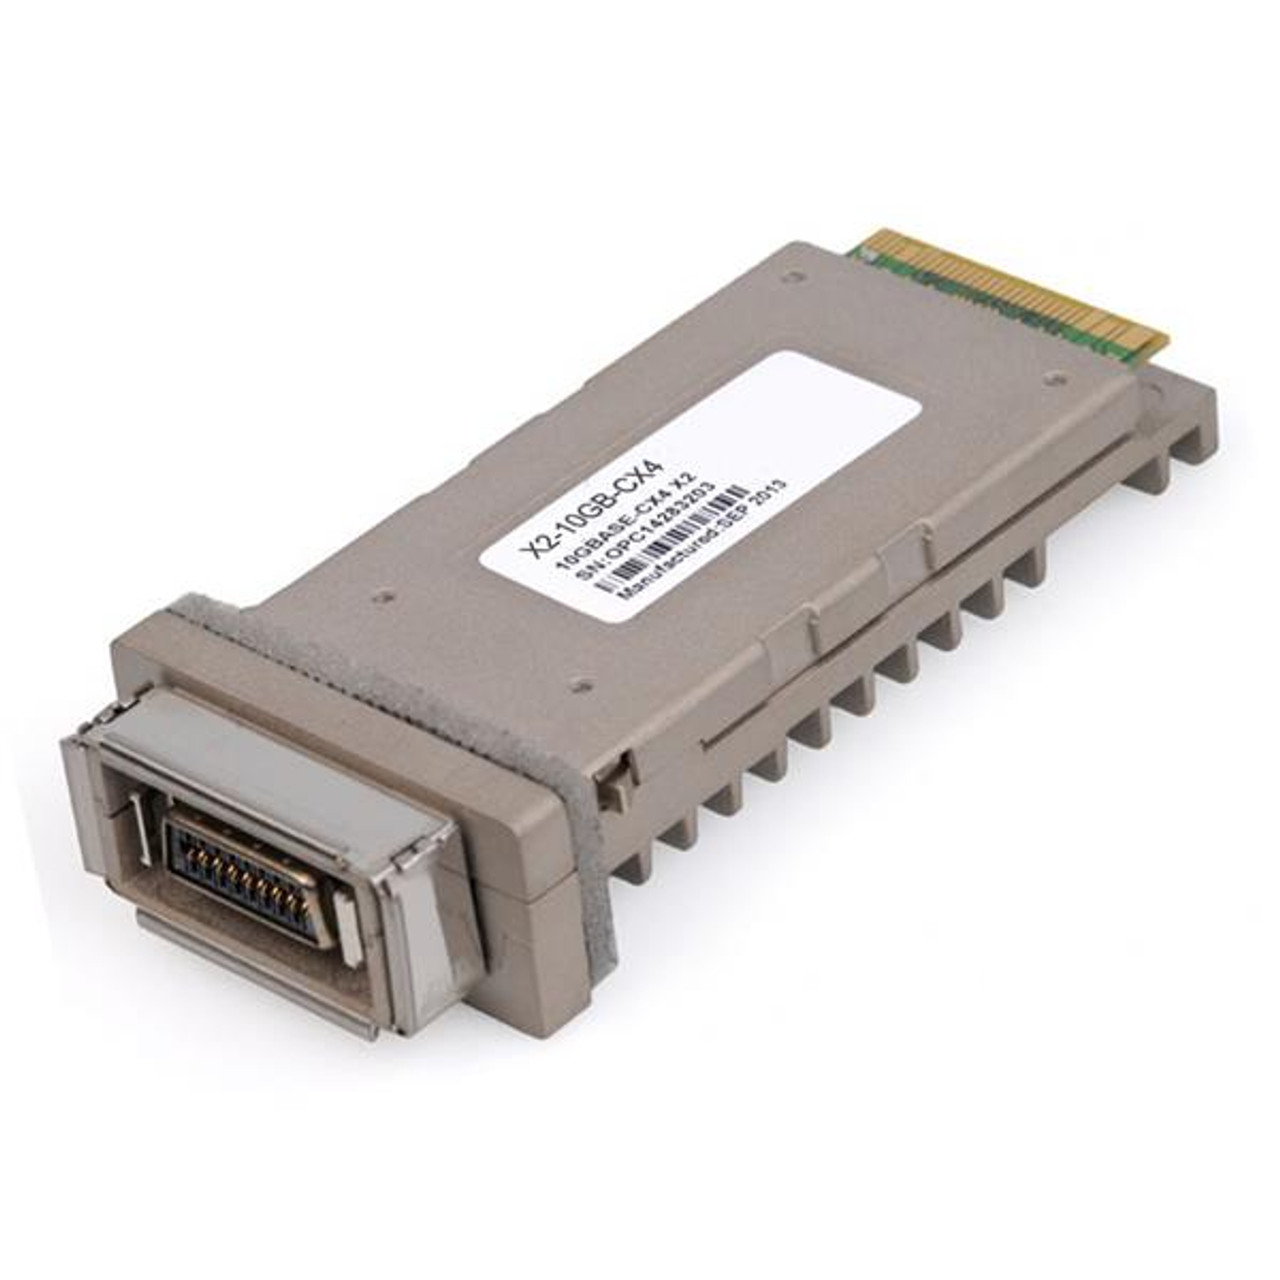 X2-10GB Cisco 10Gbps 10GBase-SR Multi-mode Fiber 300m 850nm Duplex SC Connector X2 Transceiver Module